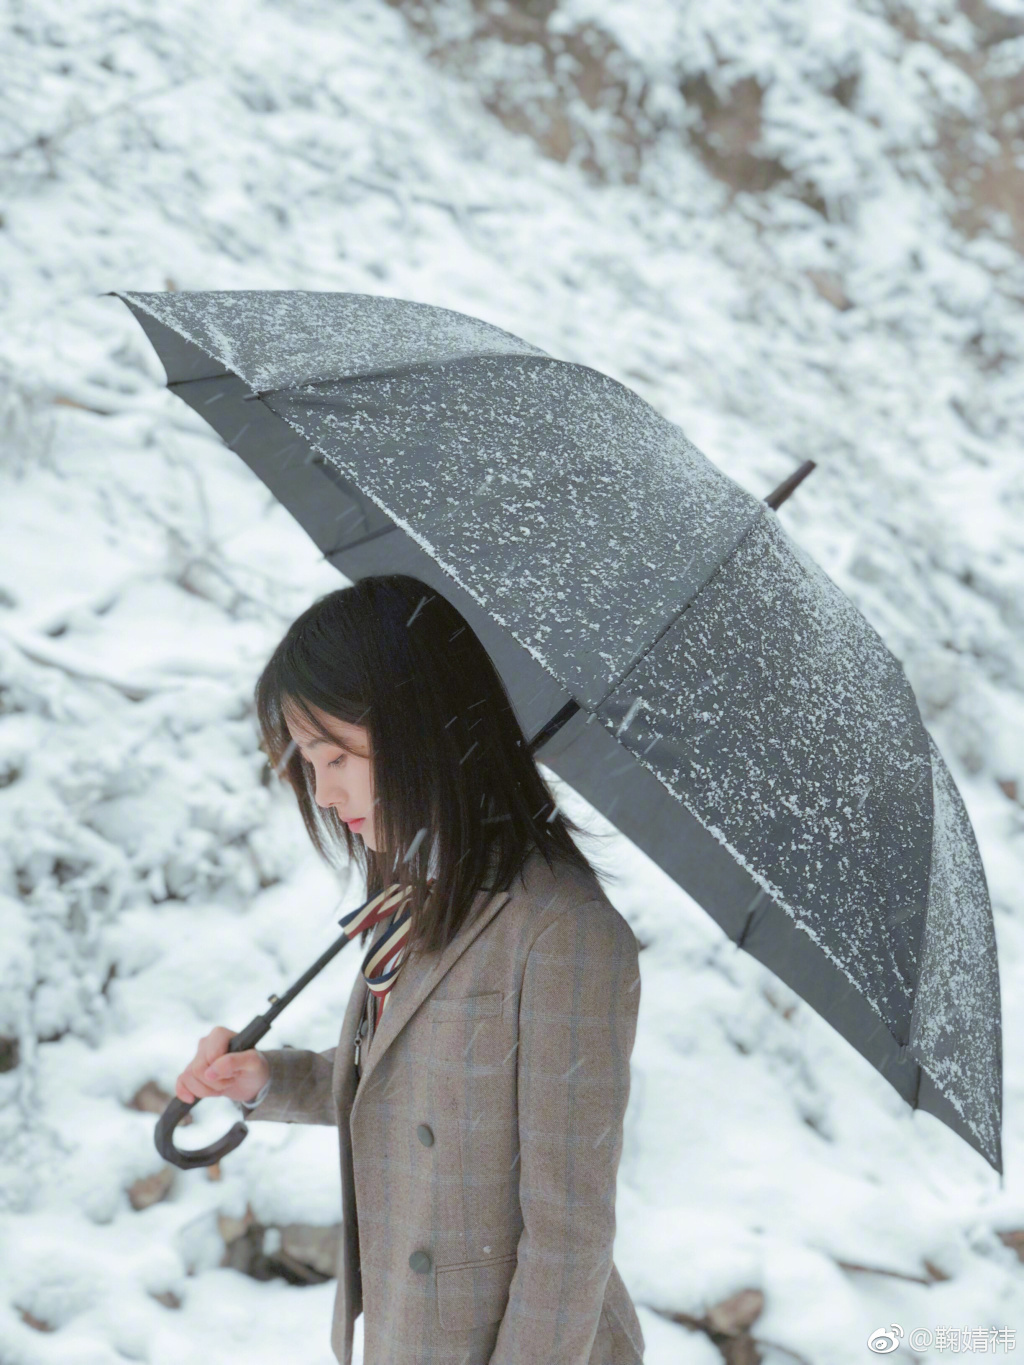 鞠婧祎 一组雪地写真,撑起雨伞漫步在雪中,露出甜美可爱的笑容